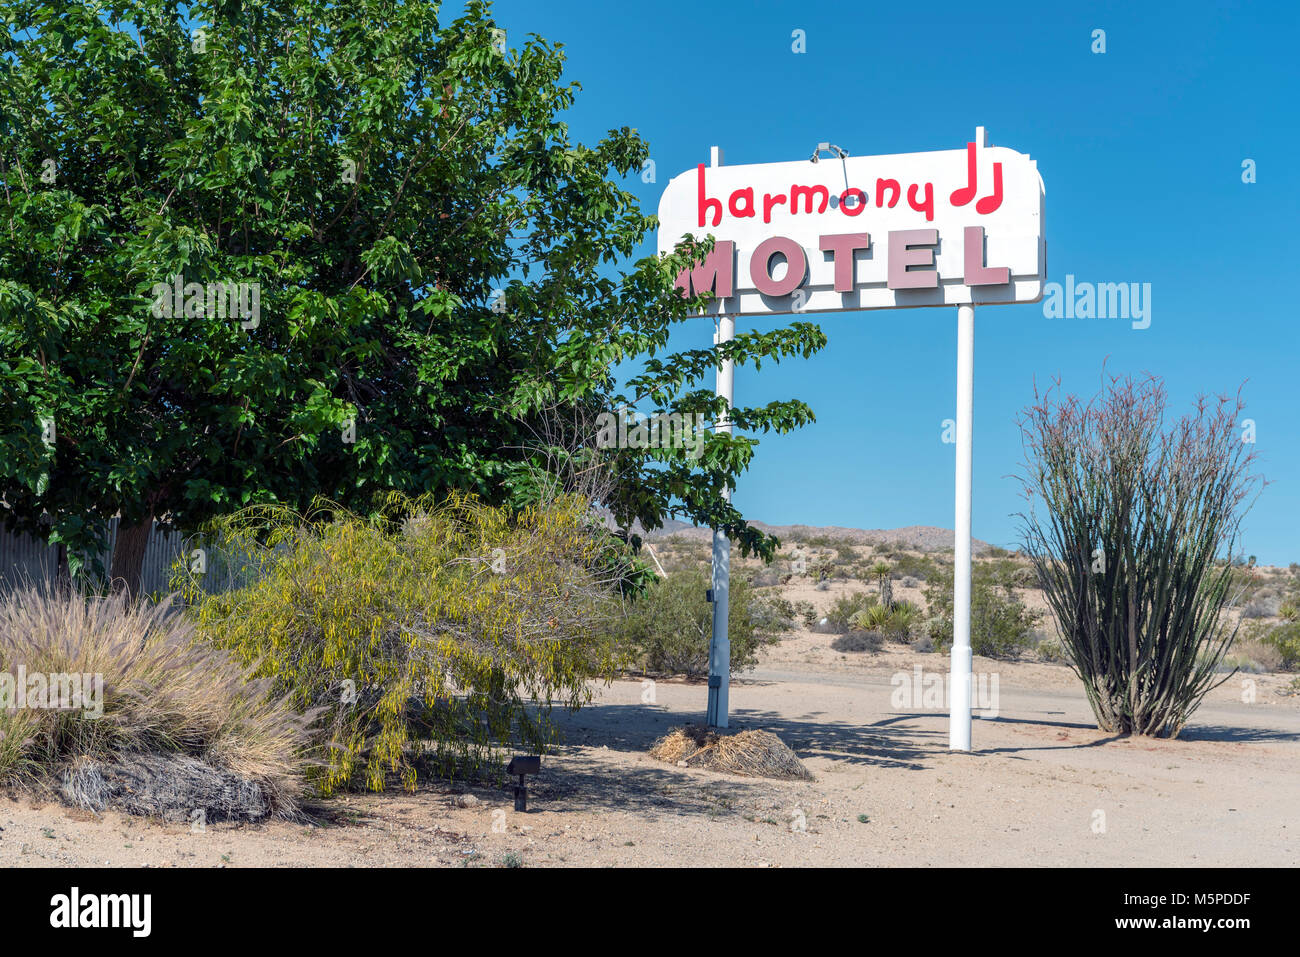 Affiche à l'extérieur de l'harmonie Motel, Twentynine Palms, Joshua Tree National Park, California, USA Banque D'Images